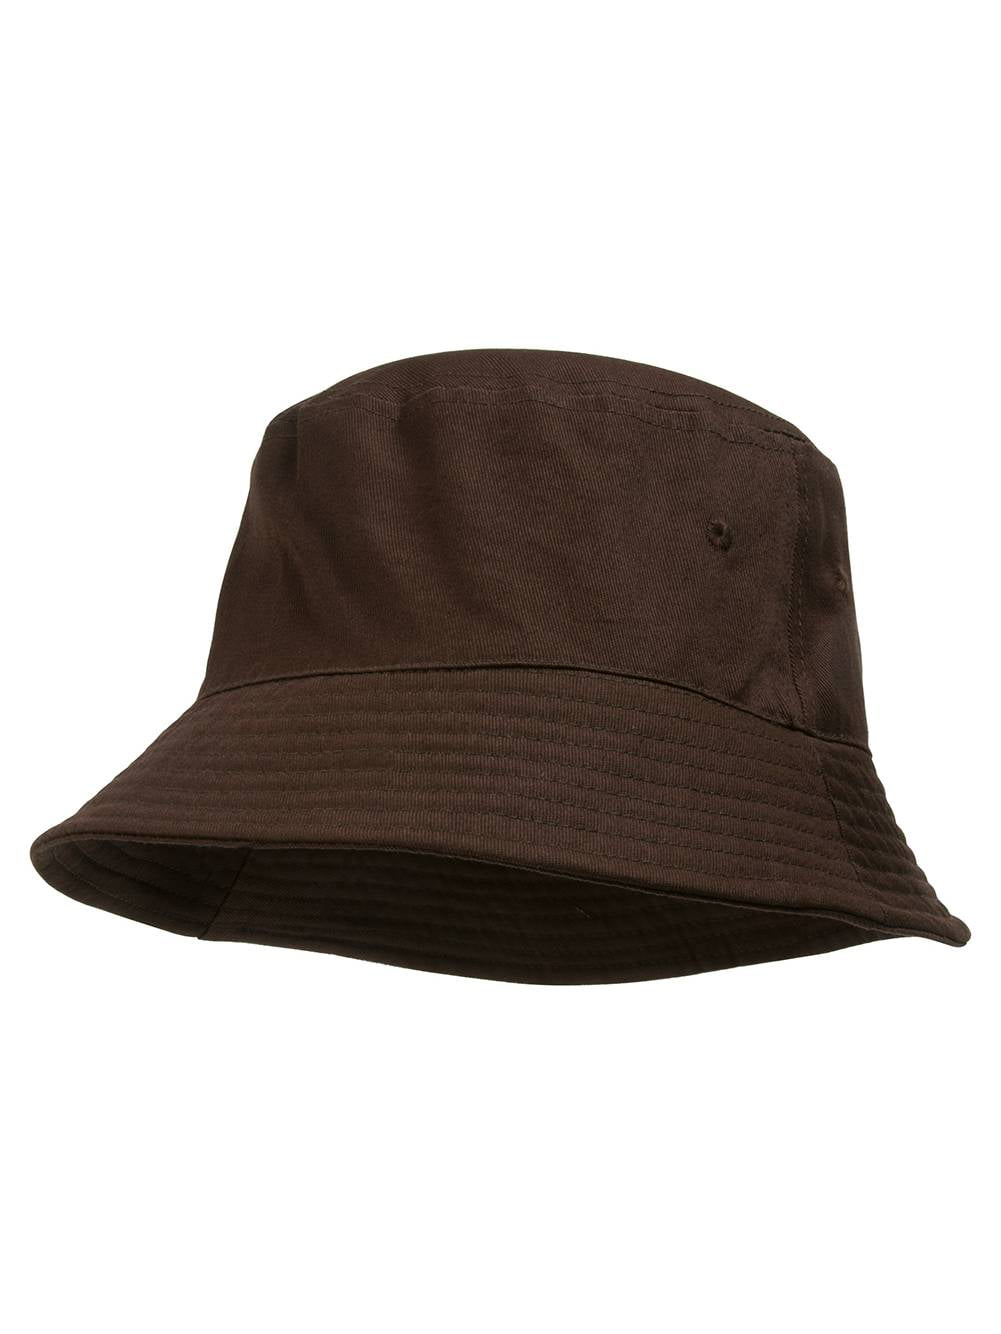 Bucket Hat For Men Women - Cotton Packable Fishing Cap, Black L/XL 